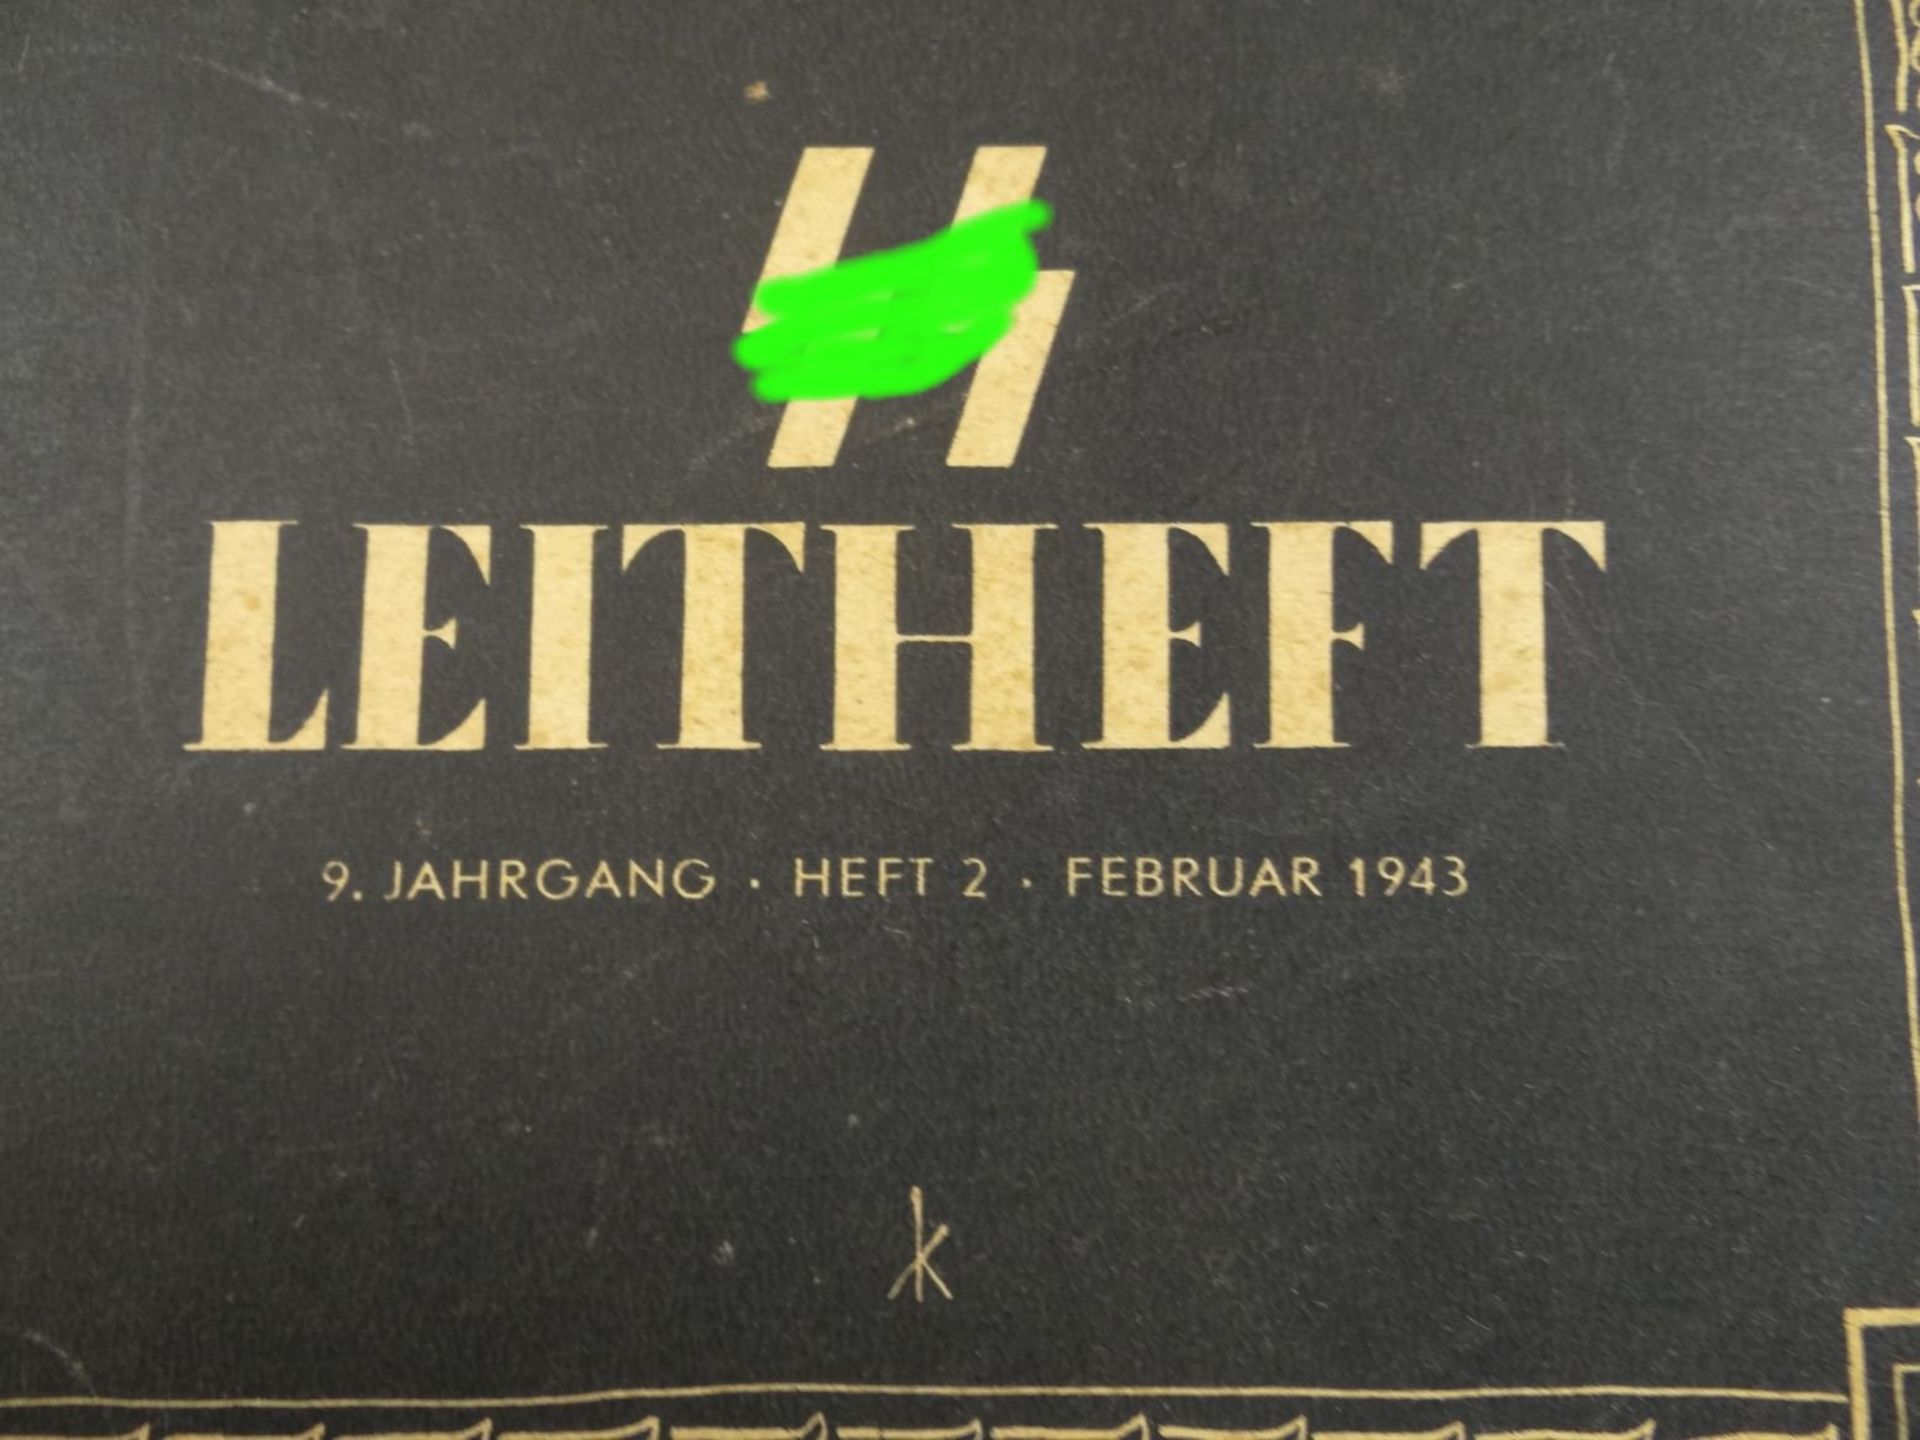 SS-Leitheft, Februar 1943 - Bild 4 aus 6